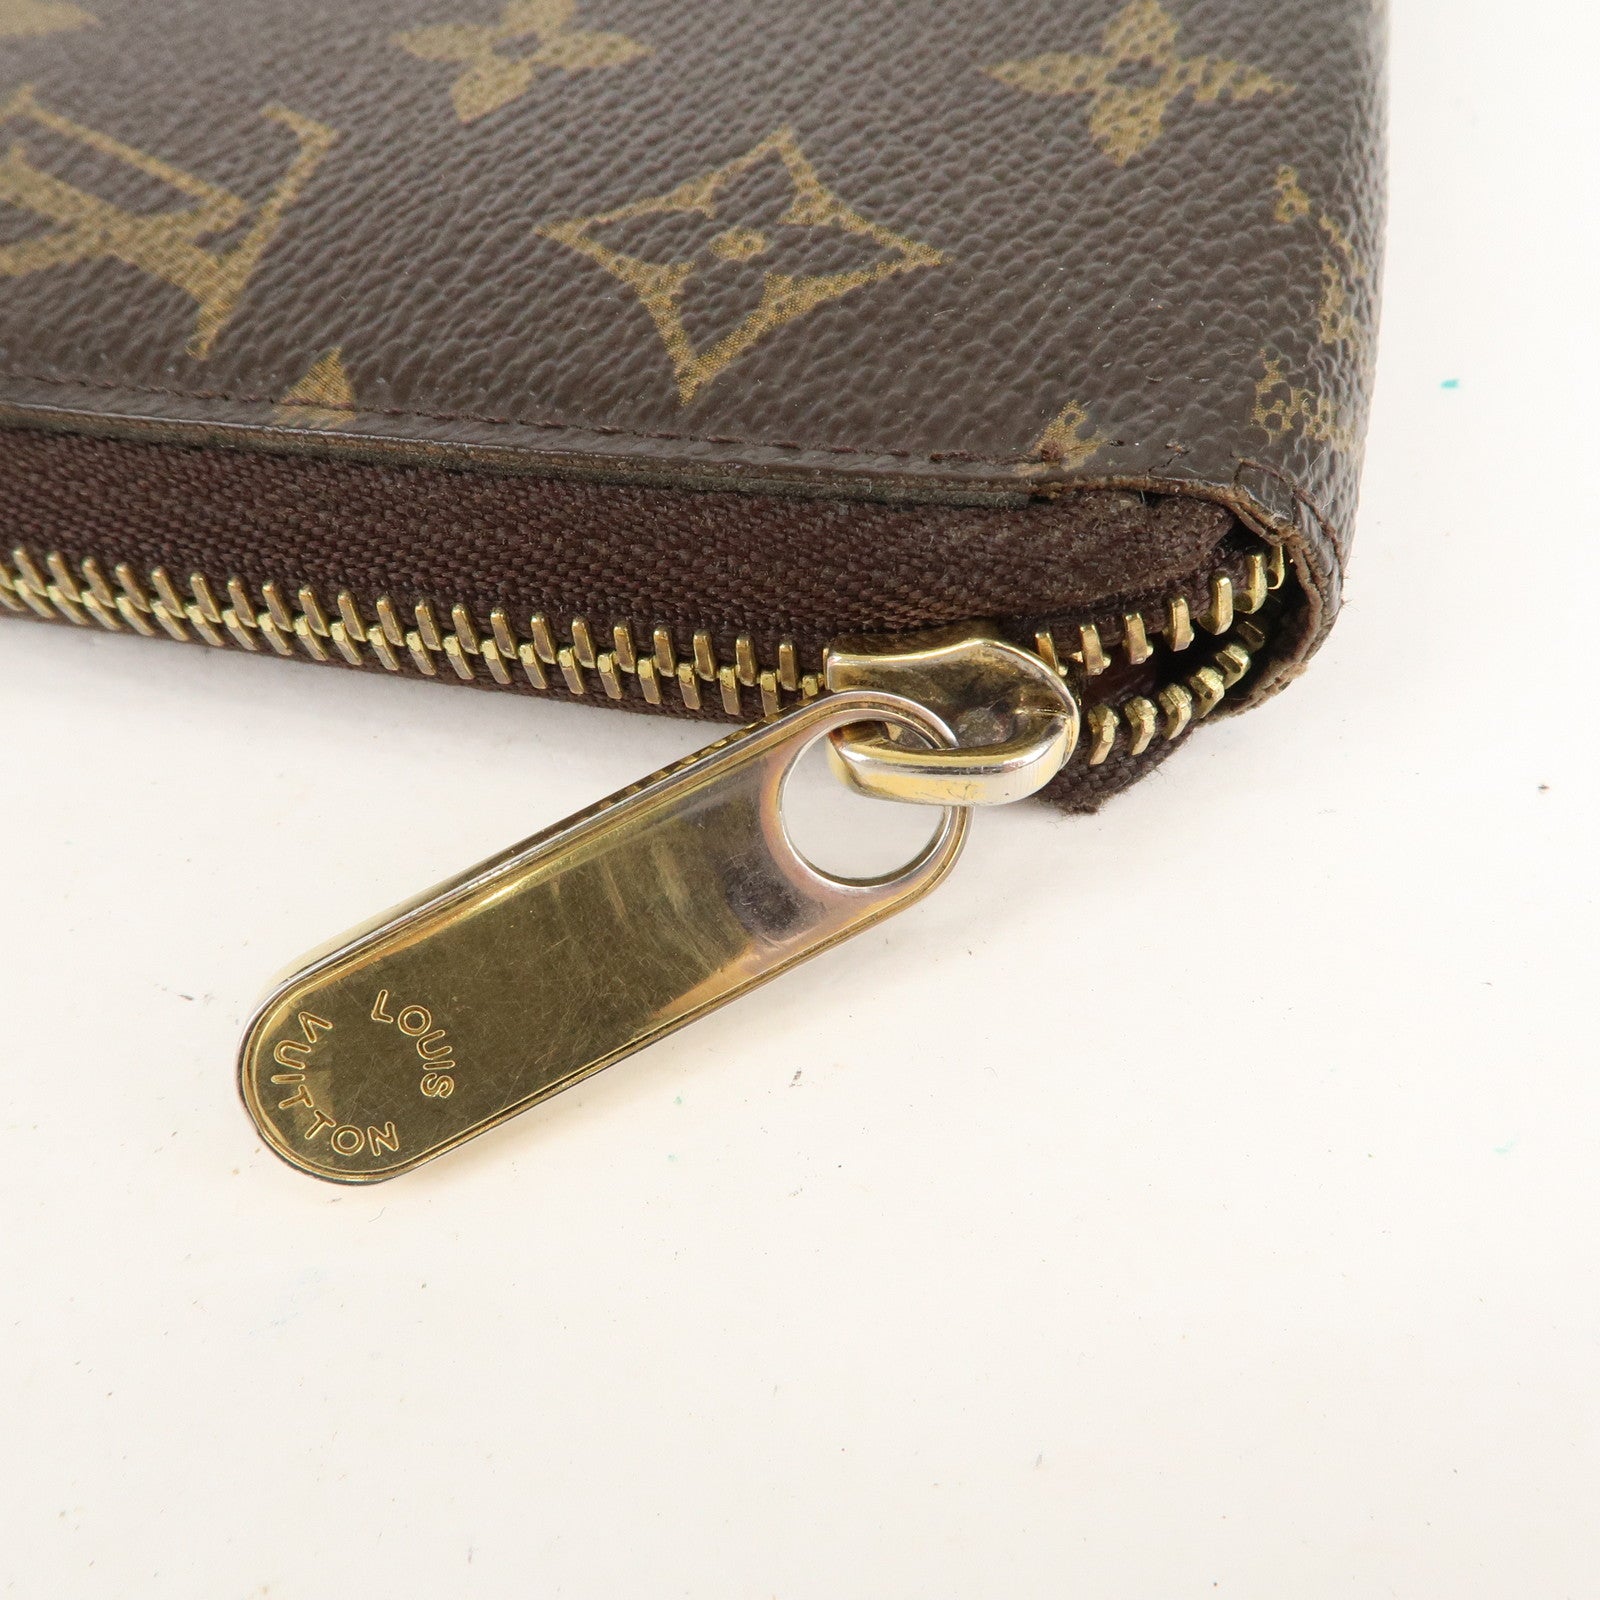 LOUIS VUITTON purse M60017 Zippy wallet Monogram canvas